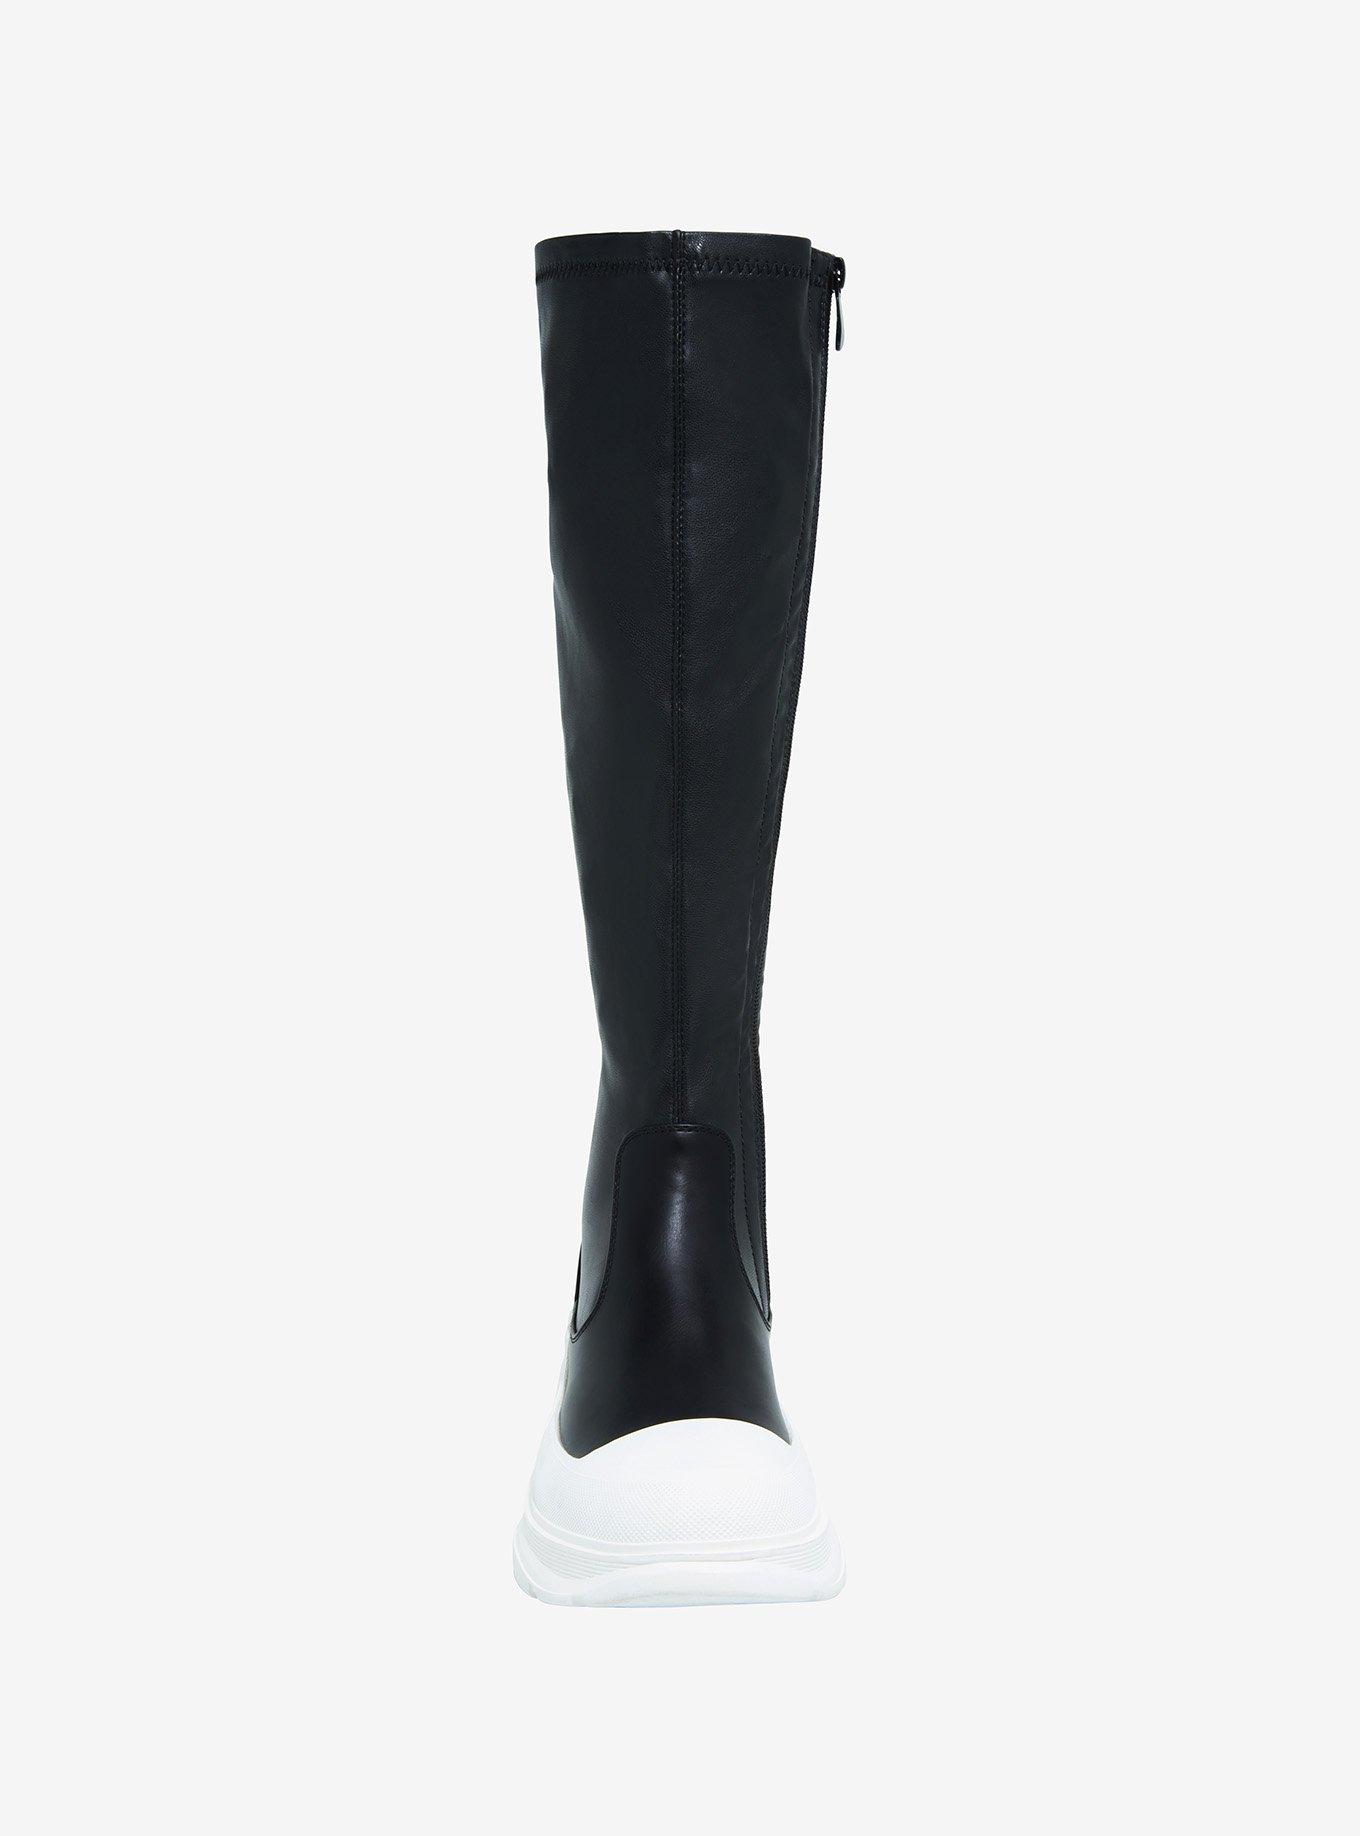 Azalea Wang Black & White Knee-High Stretch Sneakers